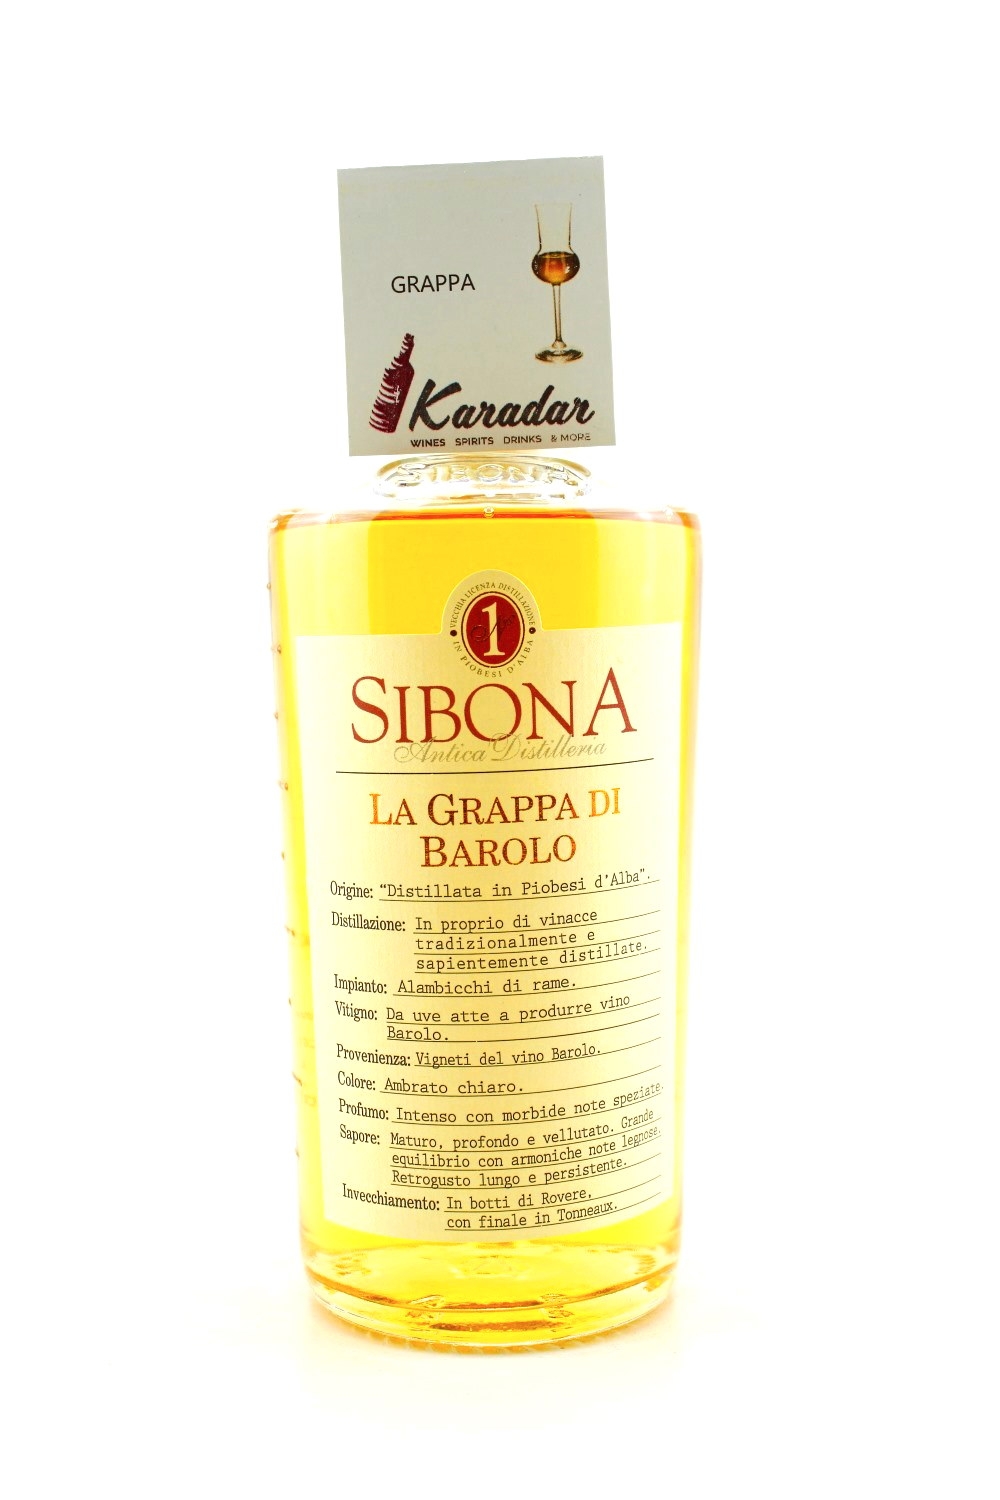 Sibona 40% Distillery vol. di gelagert Barolo Grappa